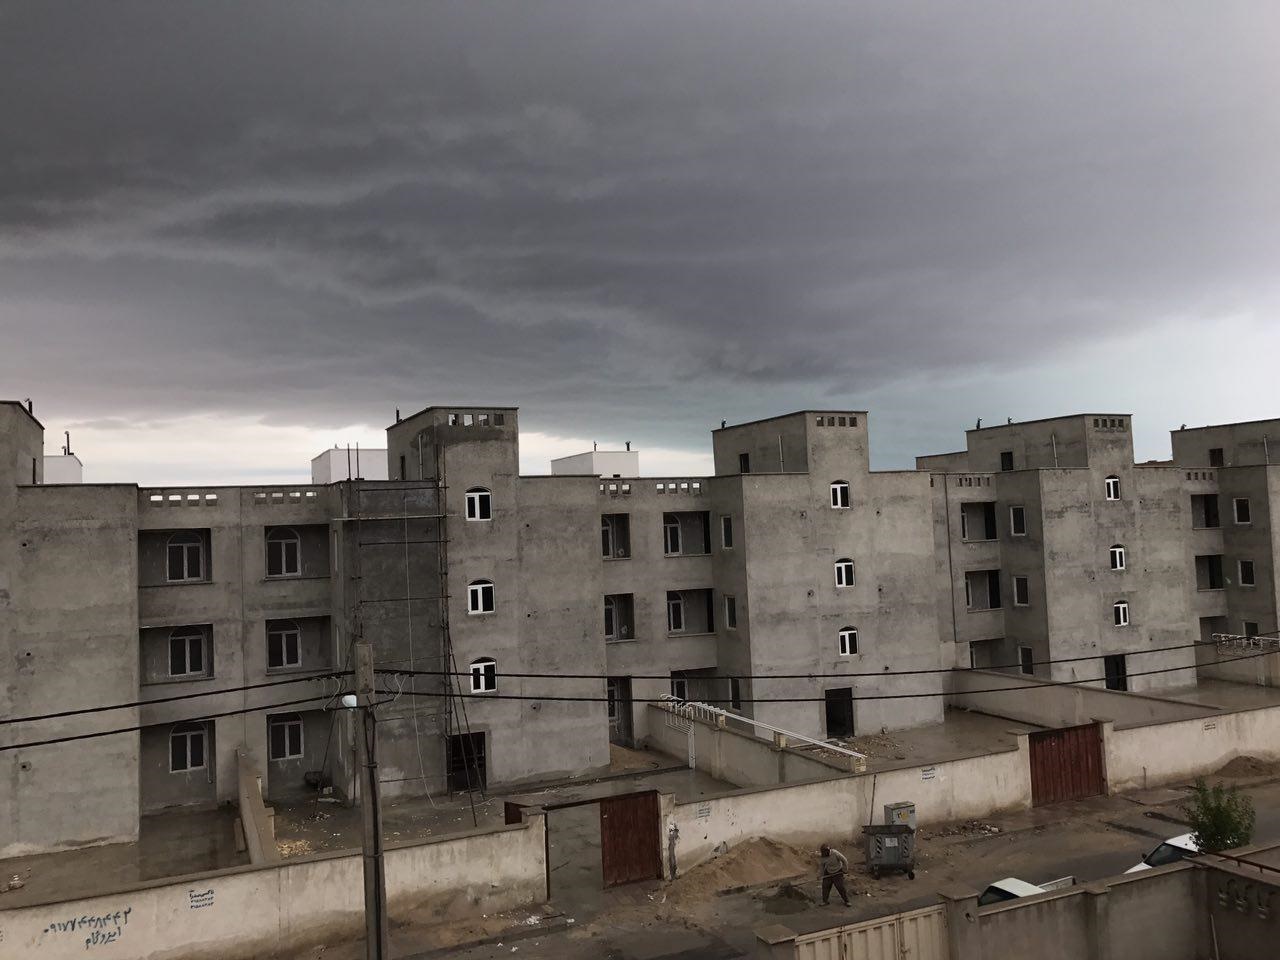 ۱۰ دقیقه بارندگی زندگی شهروندان بوشهری را دچار مشکل کرد